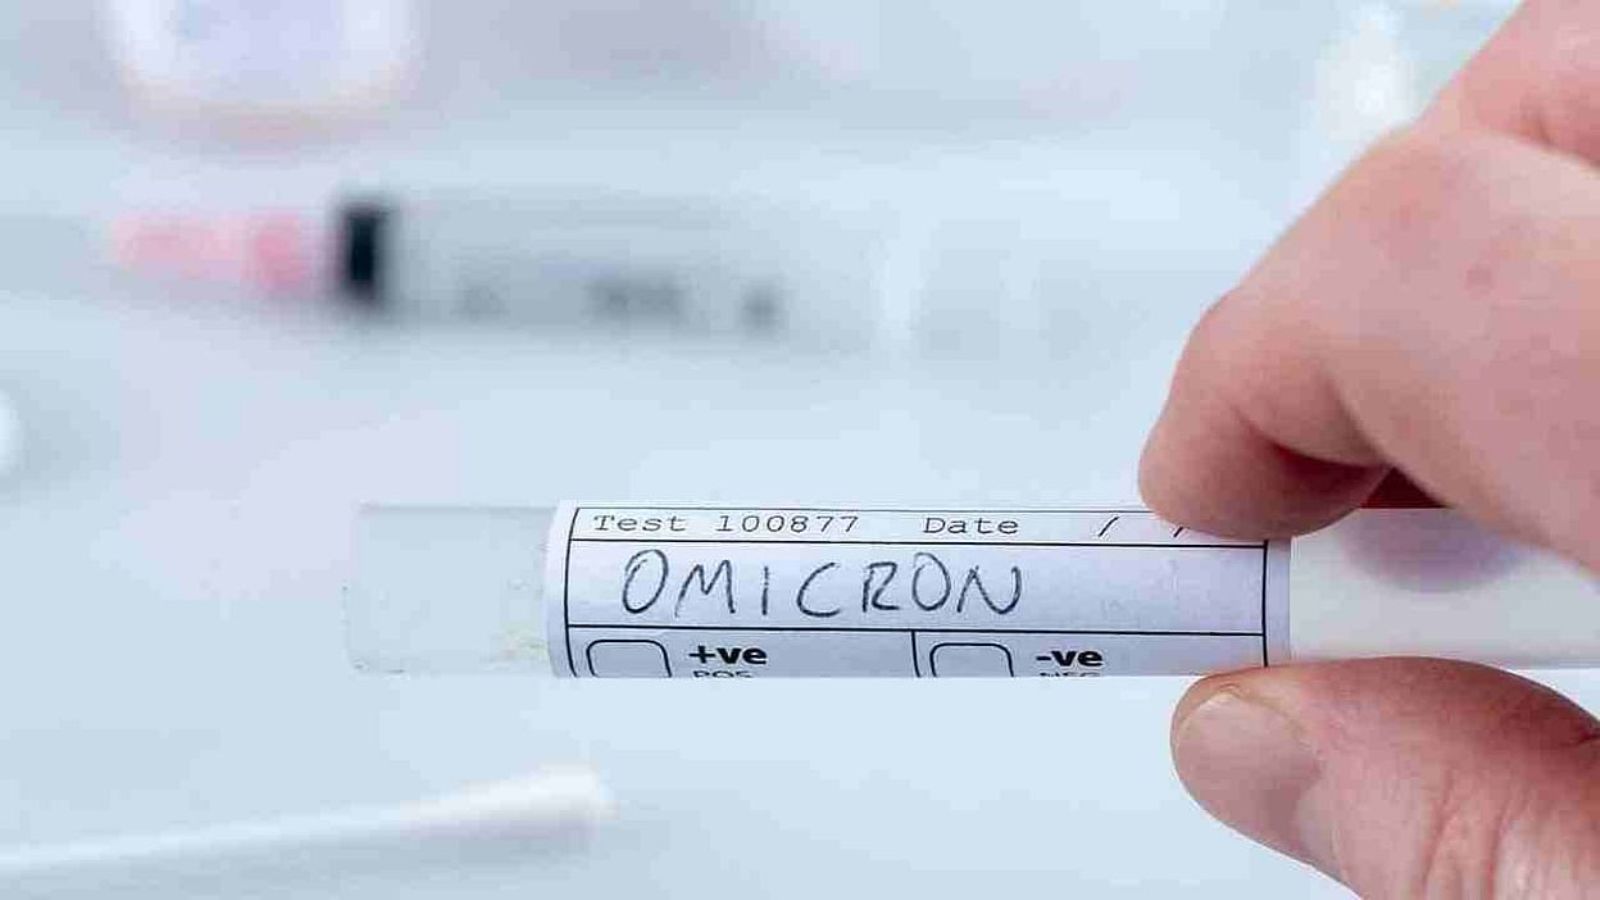 Omicron : दिल्ली में कोरोना विस्फोट, एक दिन में मिले 24 ओमिक्रोन संक्रमित